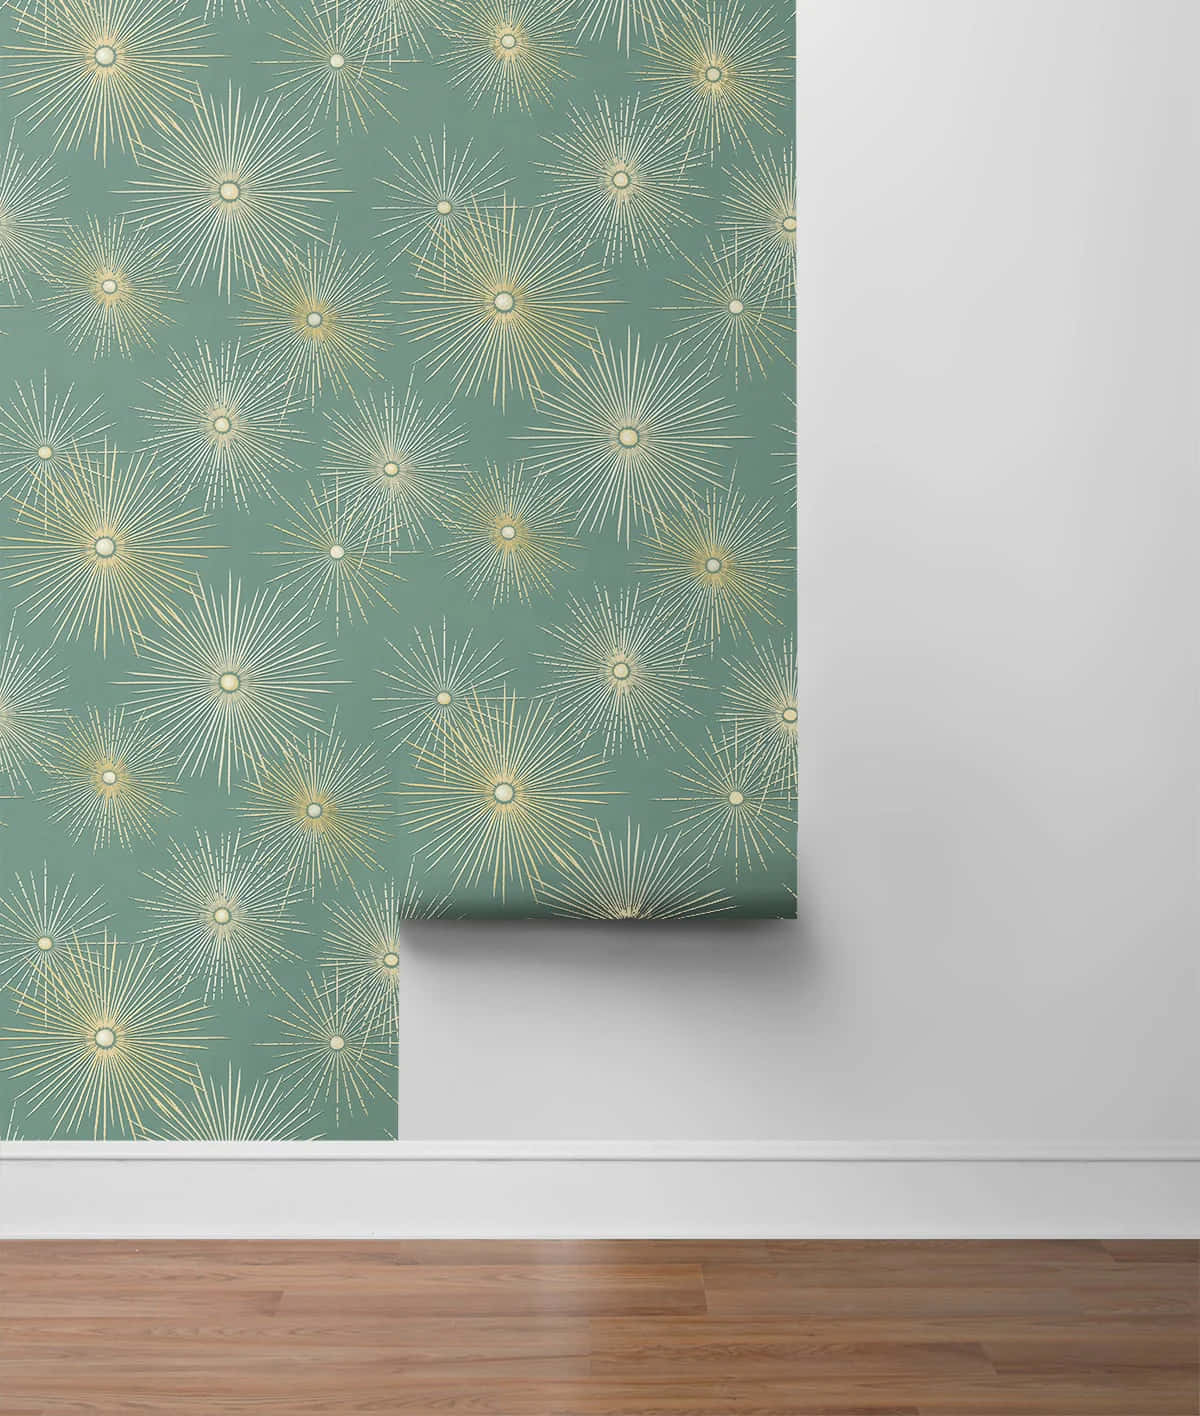 Starburst Pattern Wallpaper Roll Wallpaper